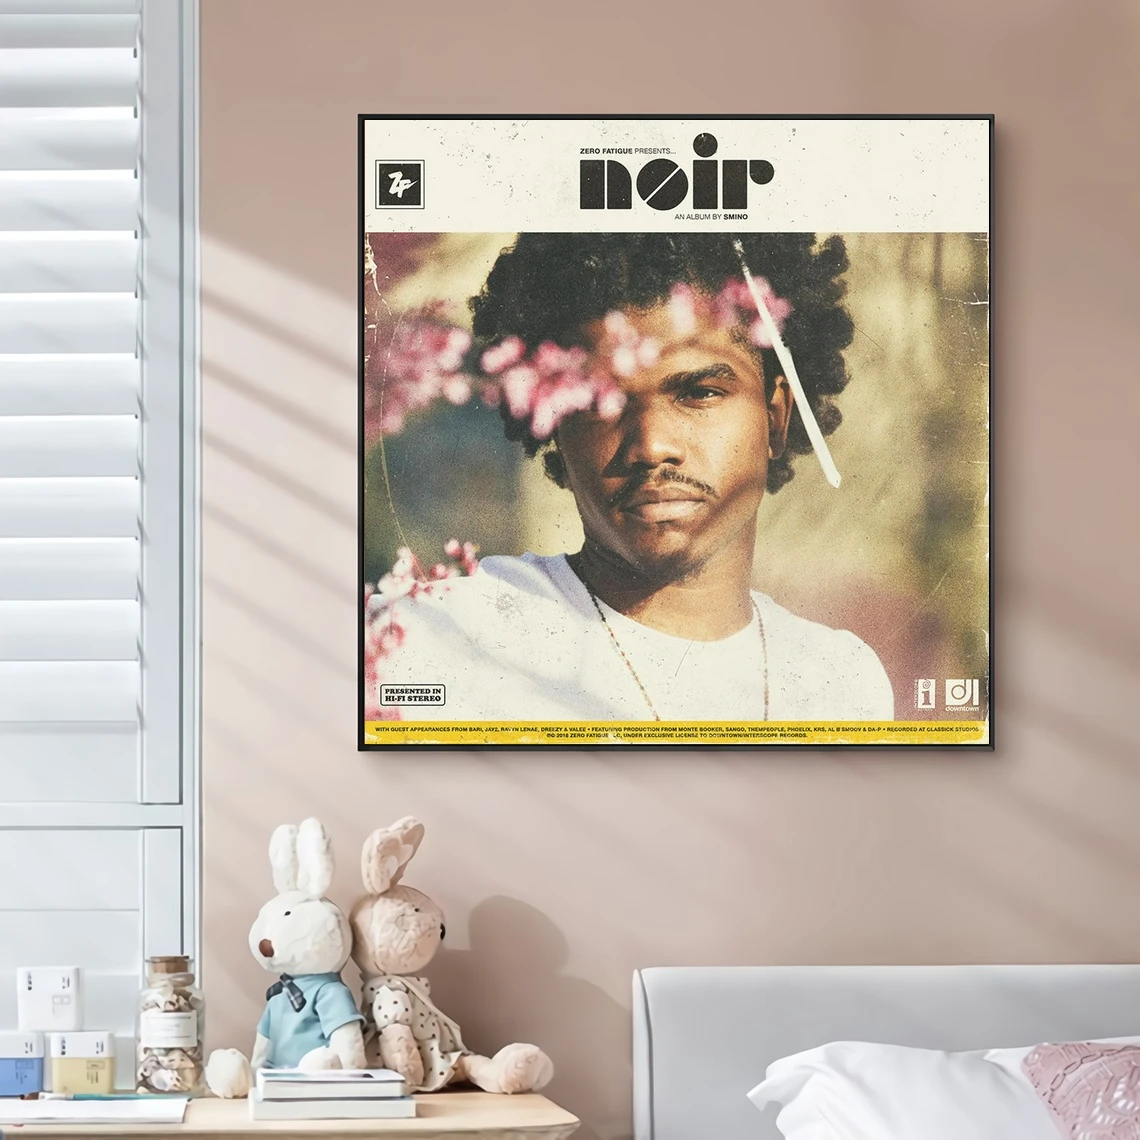 

Альбомная обложка Smino NOIR для музыки, постер на холсте в стиле хип-хоп, рэпер, поп-музыка, знаменитости, настенная живопись, художественное украшение